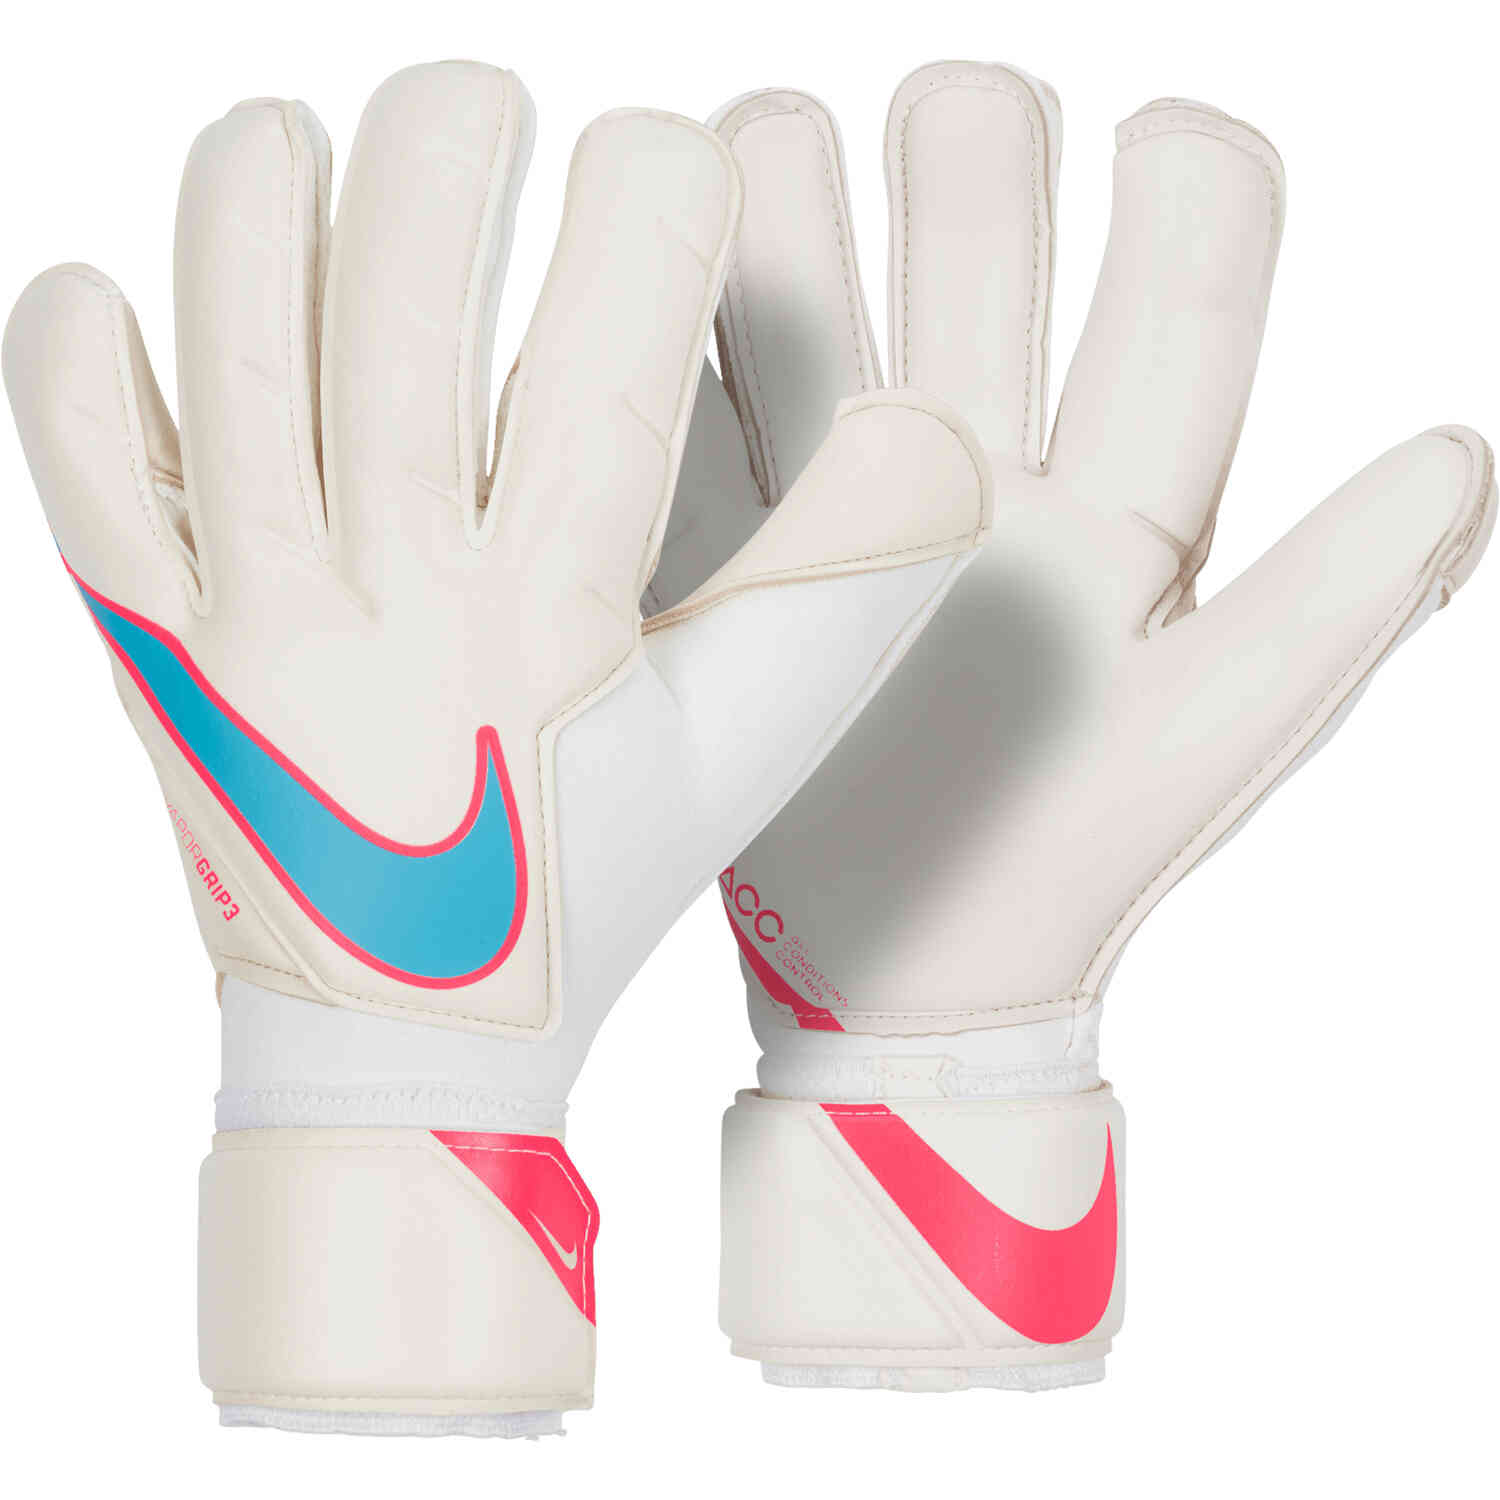 https://www.soccerpro.com/wp-content/uploads/cn5650_102_nike_vapor_grip3_gk_gloves_white_white_with_baltic_blue_01.jpg